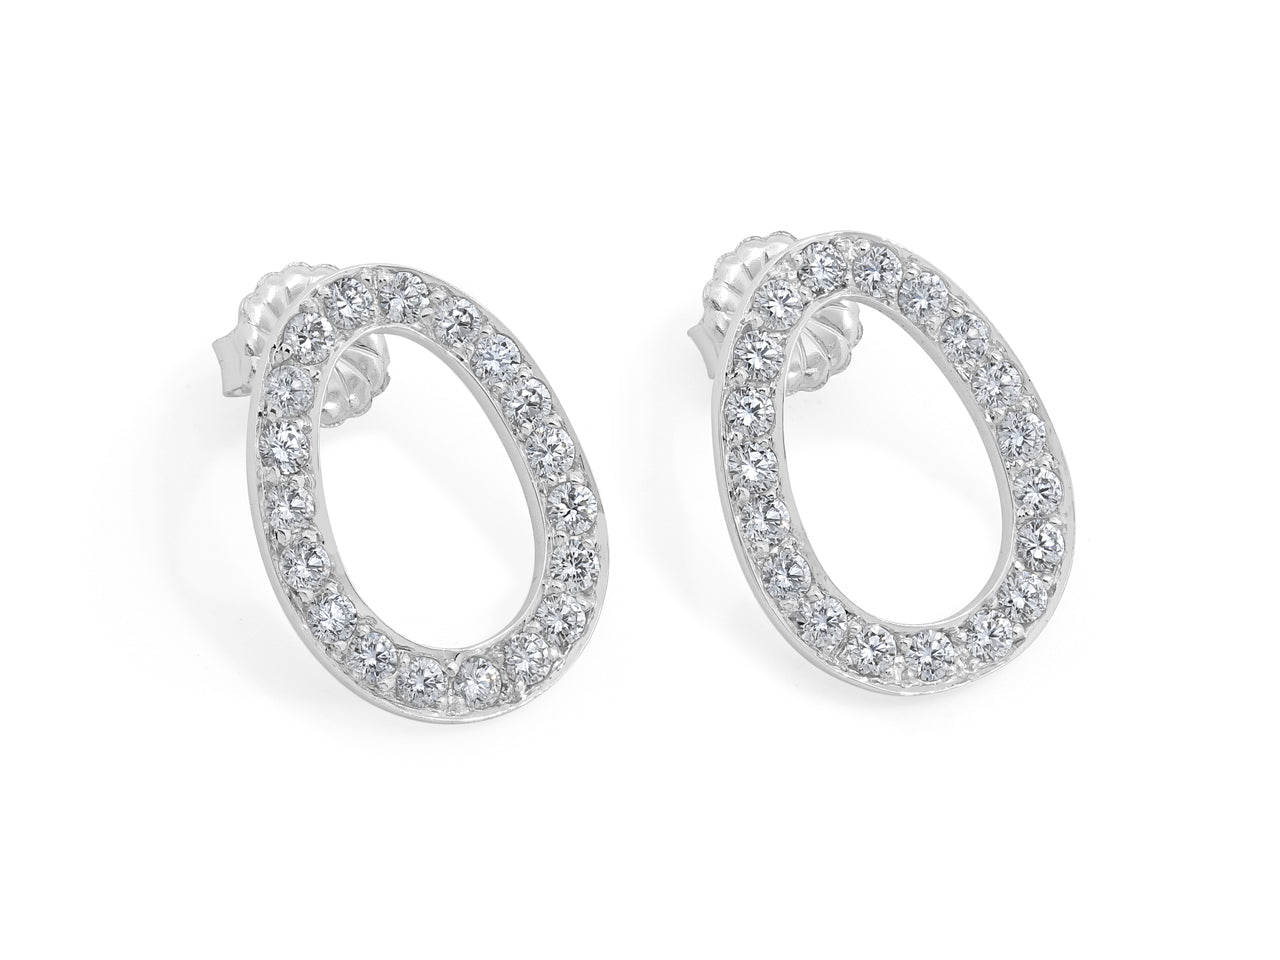 Beladora 'Bespoke' Oval Diamond Earrings in 18K White Gold